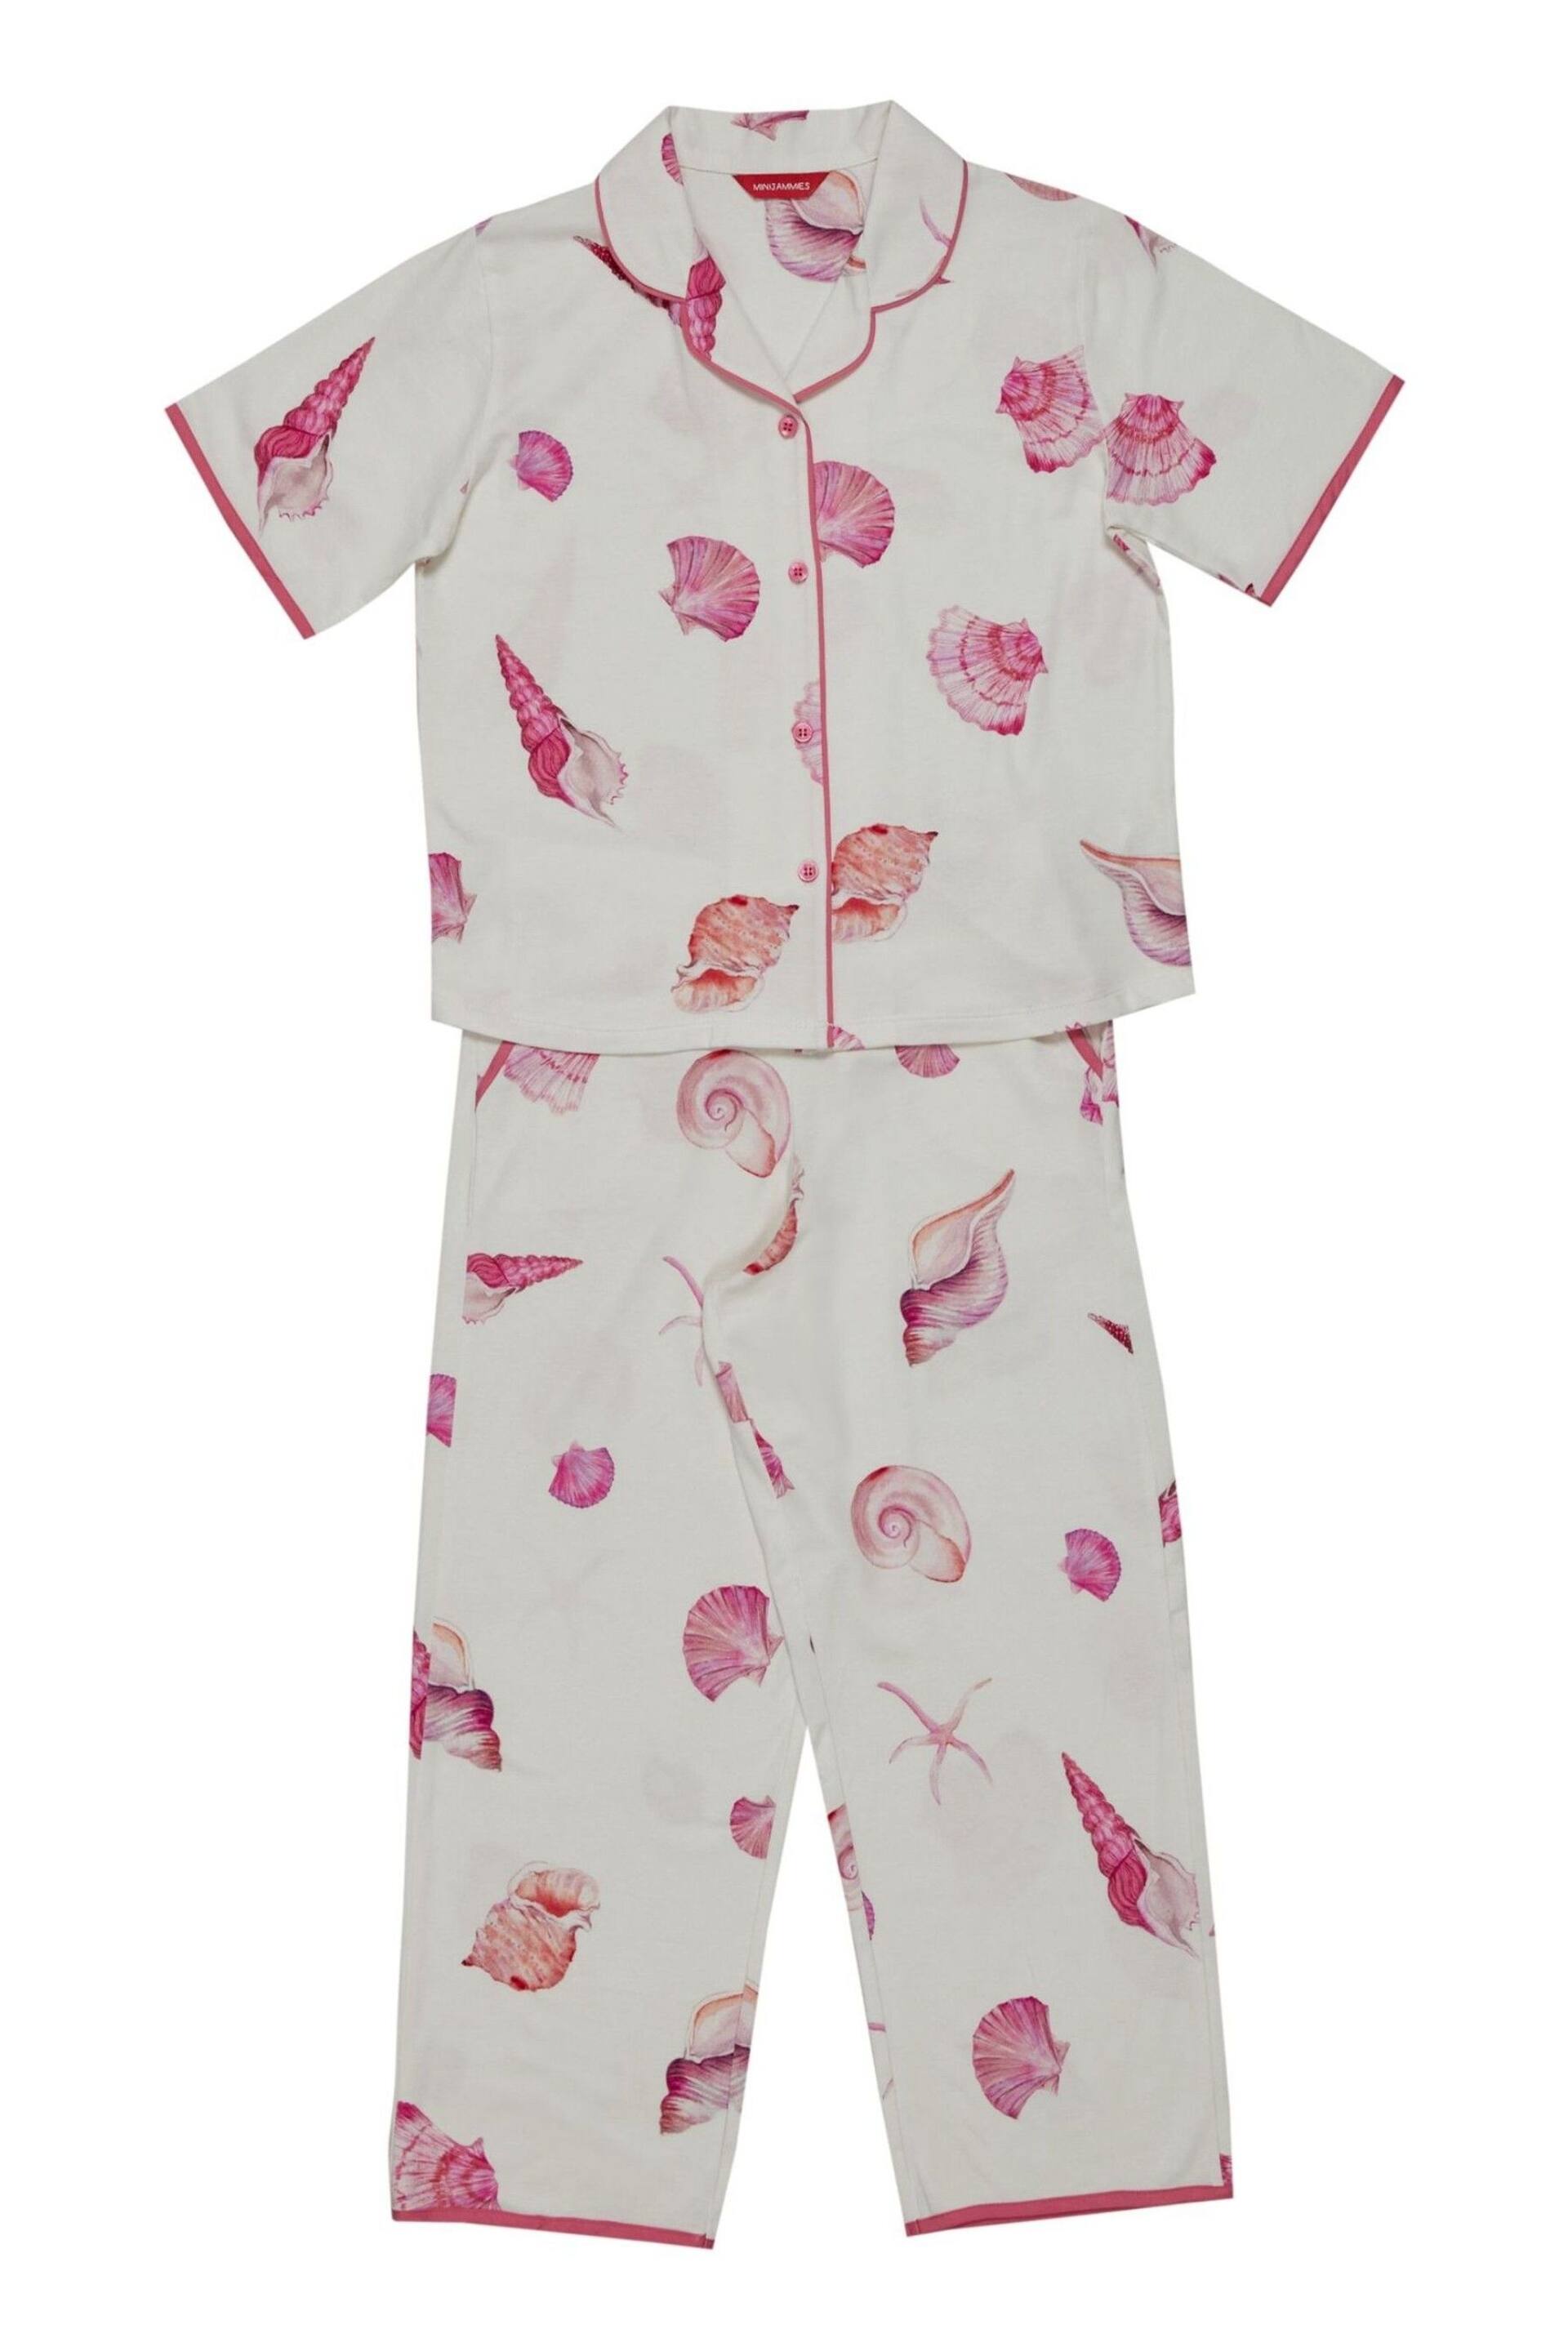 Minijammies Cream Shell Printed Jersey Short Sleeve Pyjamas Set - Image 4 of 4